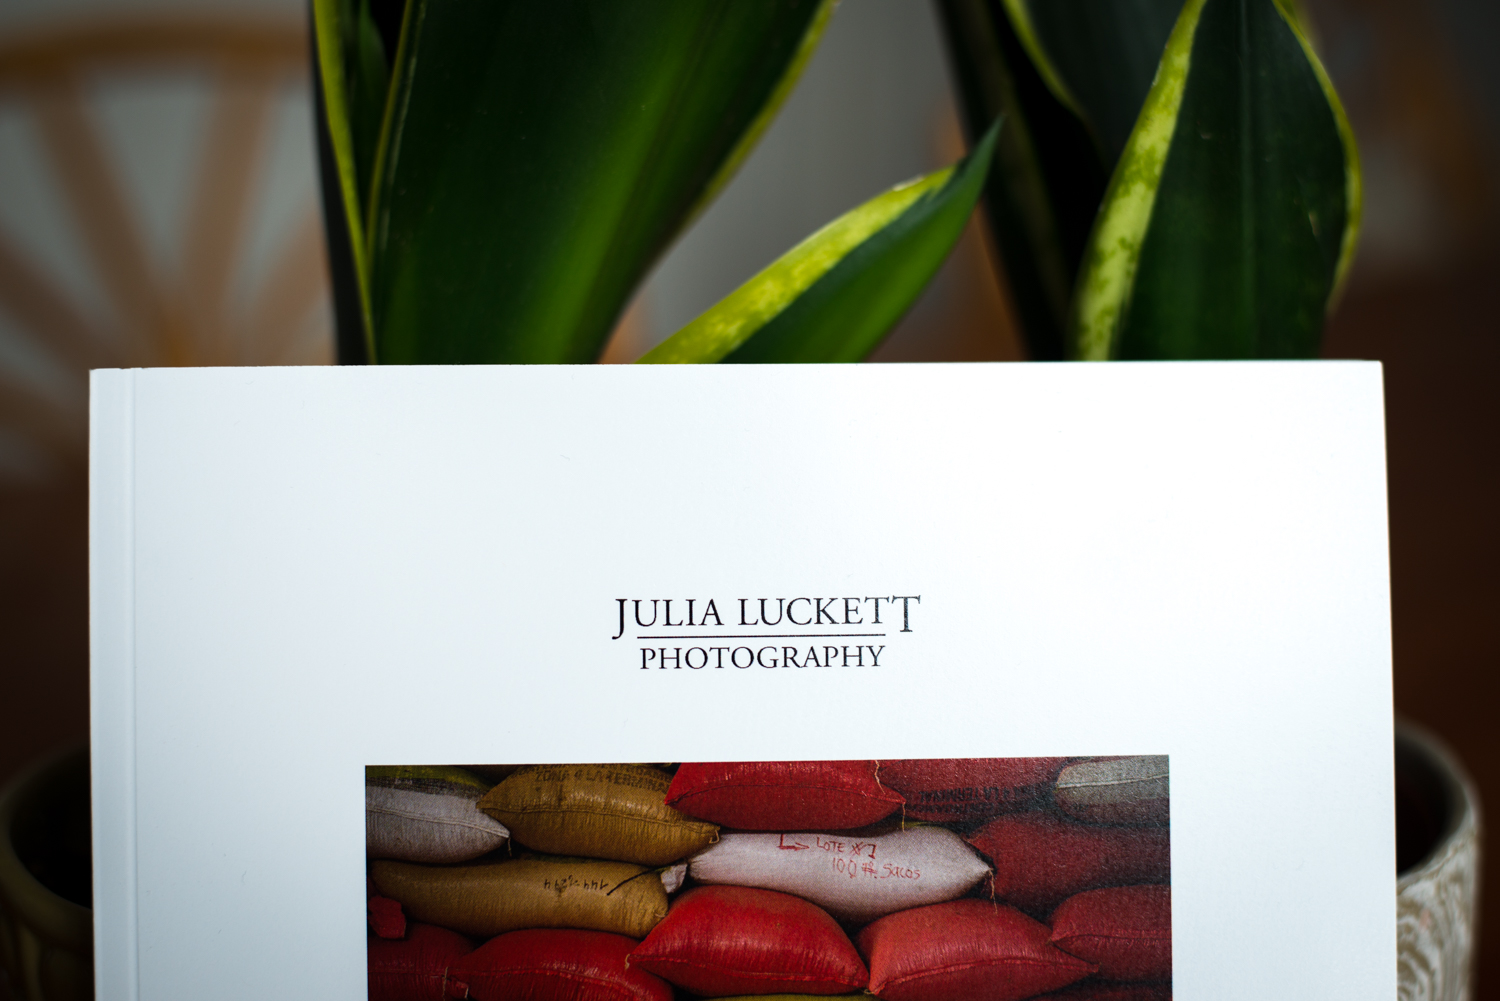 07262017-F4FBook-Amira-JuliaLuckettPhotography-27.jpg